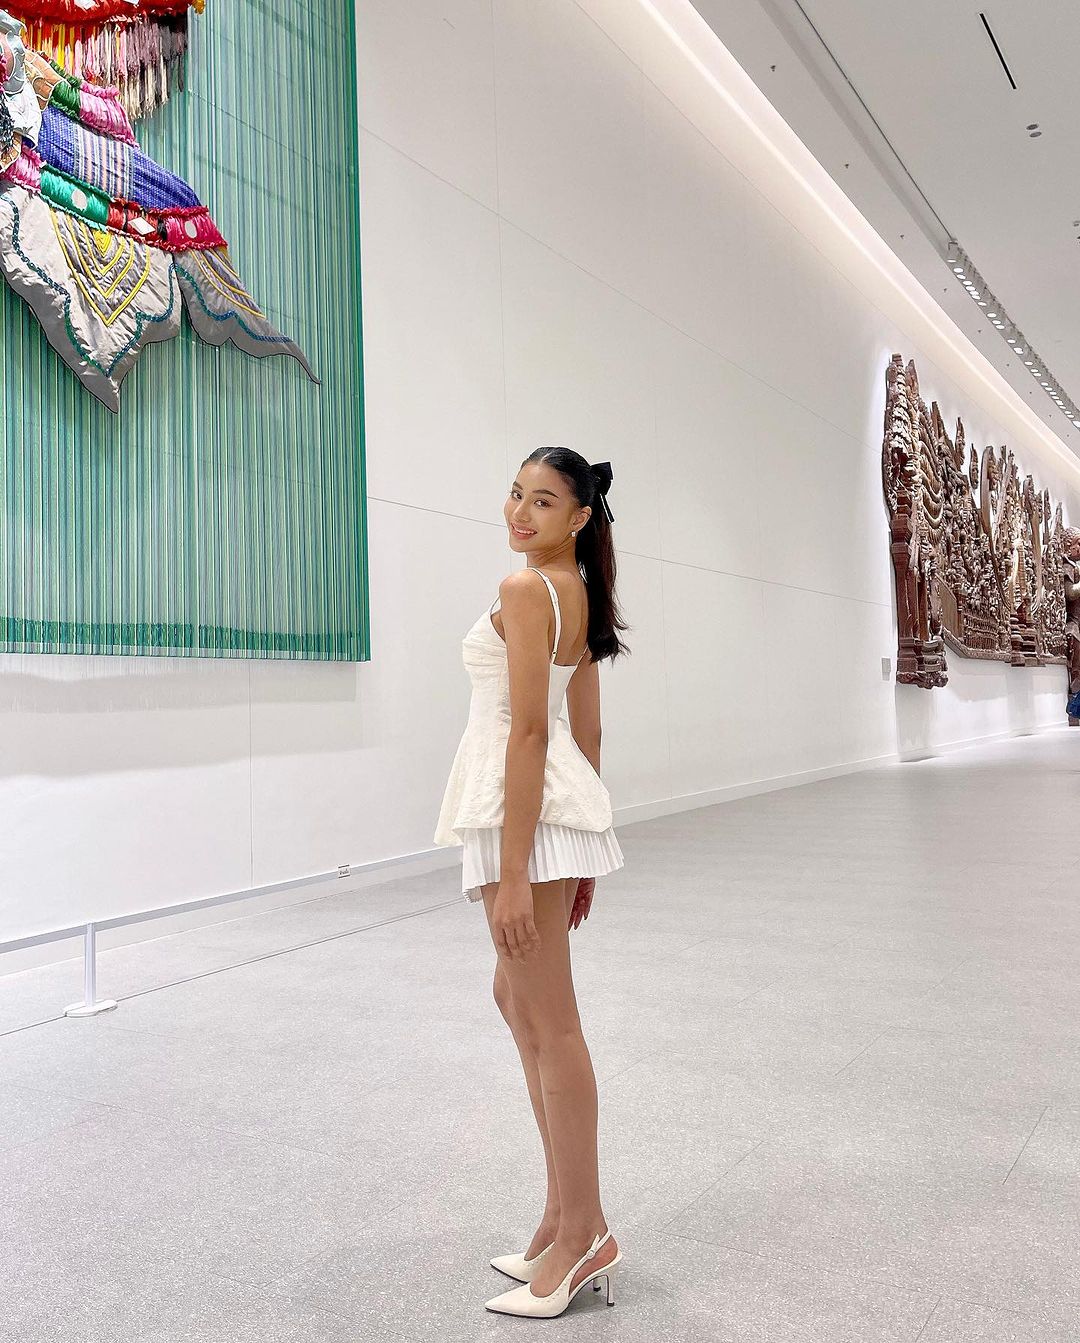 一位女士穿著白色蘭花吊帶背心🌹倒數優惠至 5 月 19 日，高跟鞋在肩上微笑，在現代畫廊裡，牆上掛著來自 the.lookbook.select 的大型複雜壁畫。